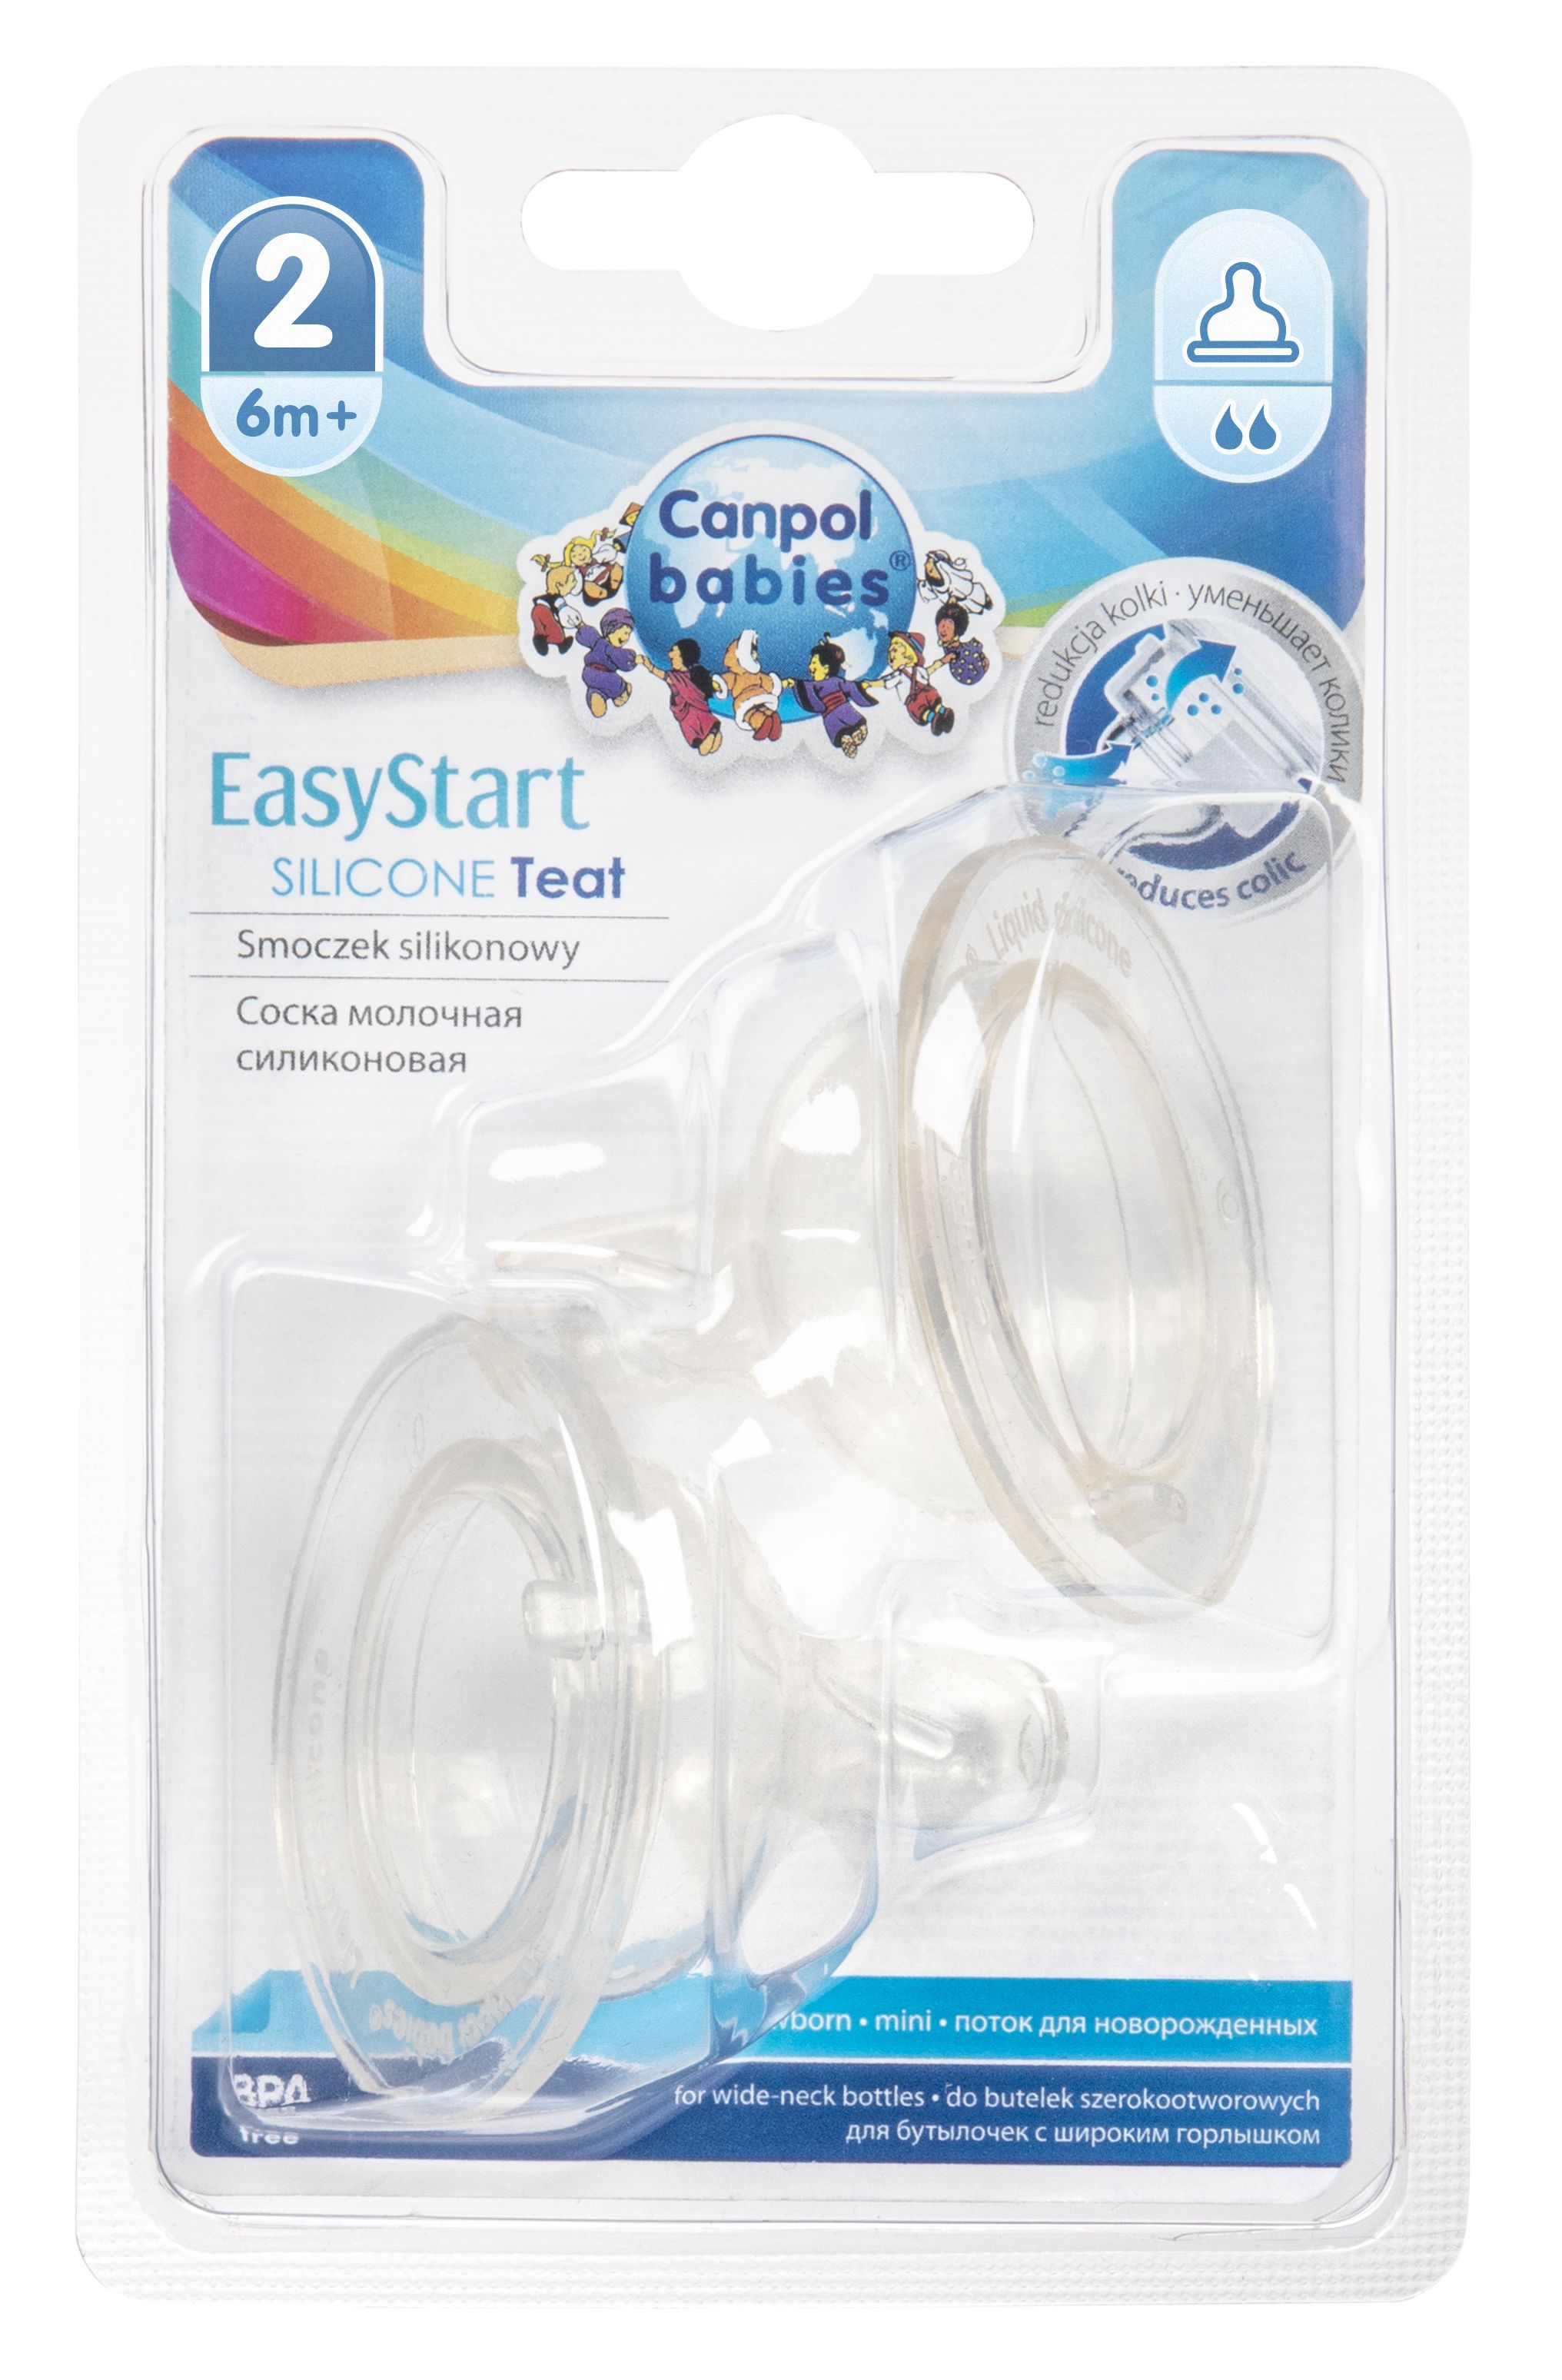 Соска силиконовая Canpol babies EasyStart, средний поток, 6+, для бутылочек с широким отверстием, 2 шт. (21/731) - фото 1